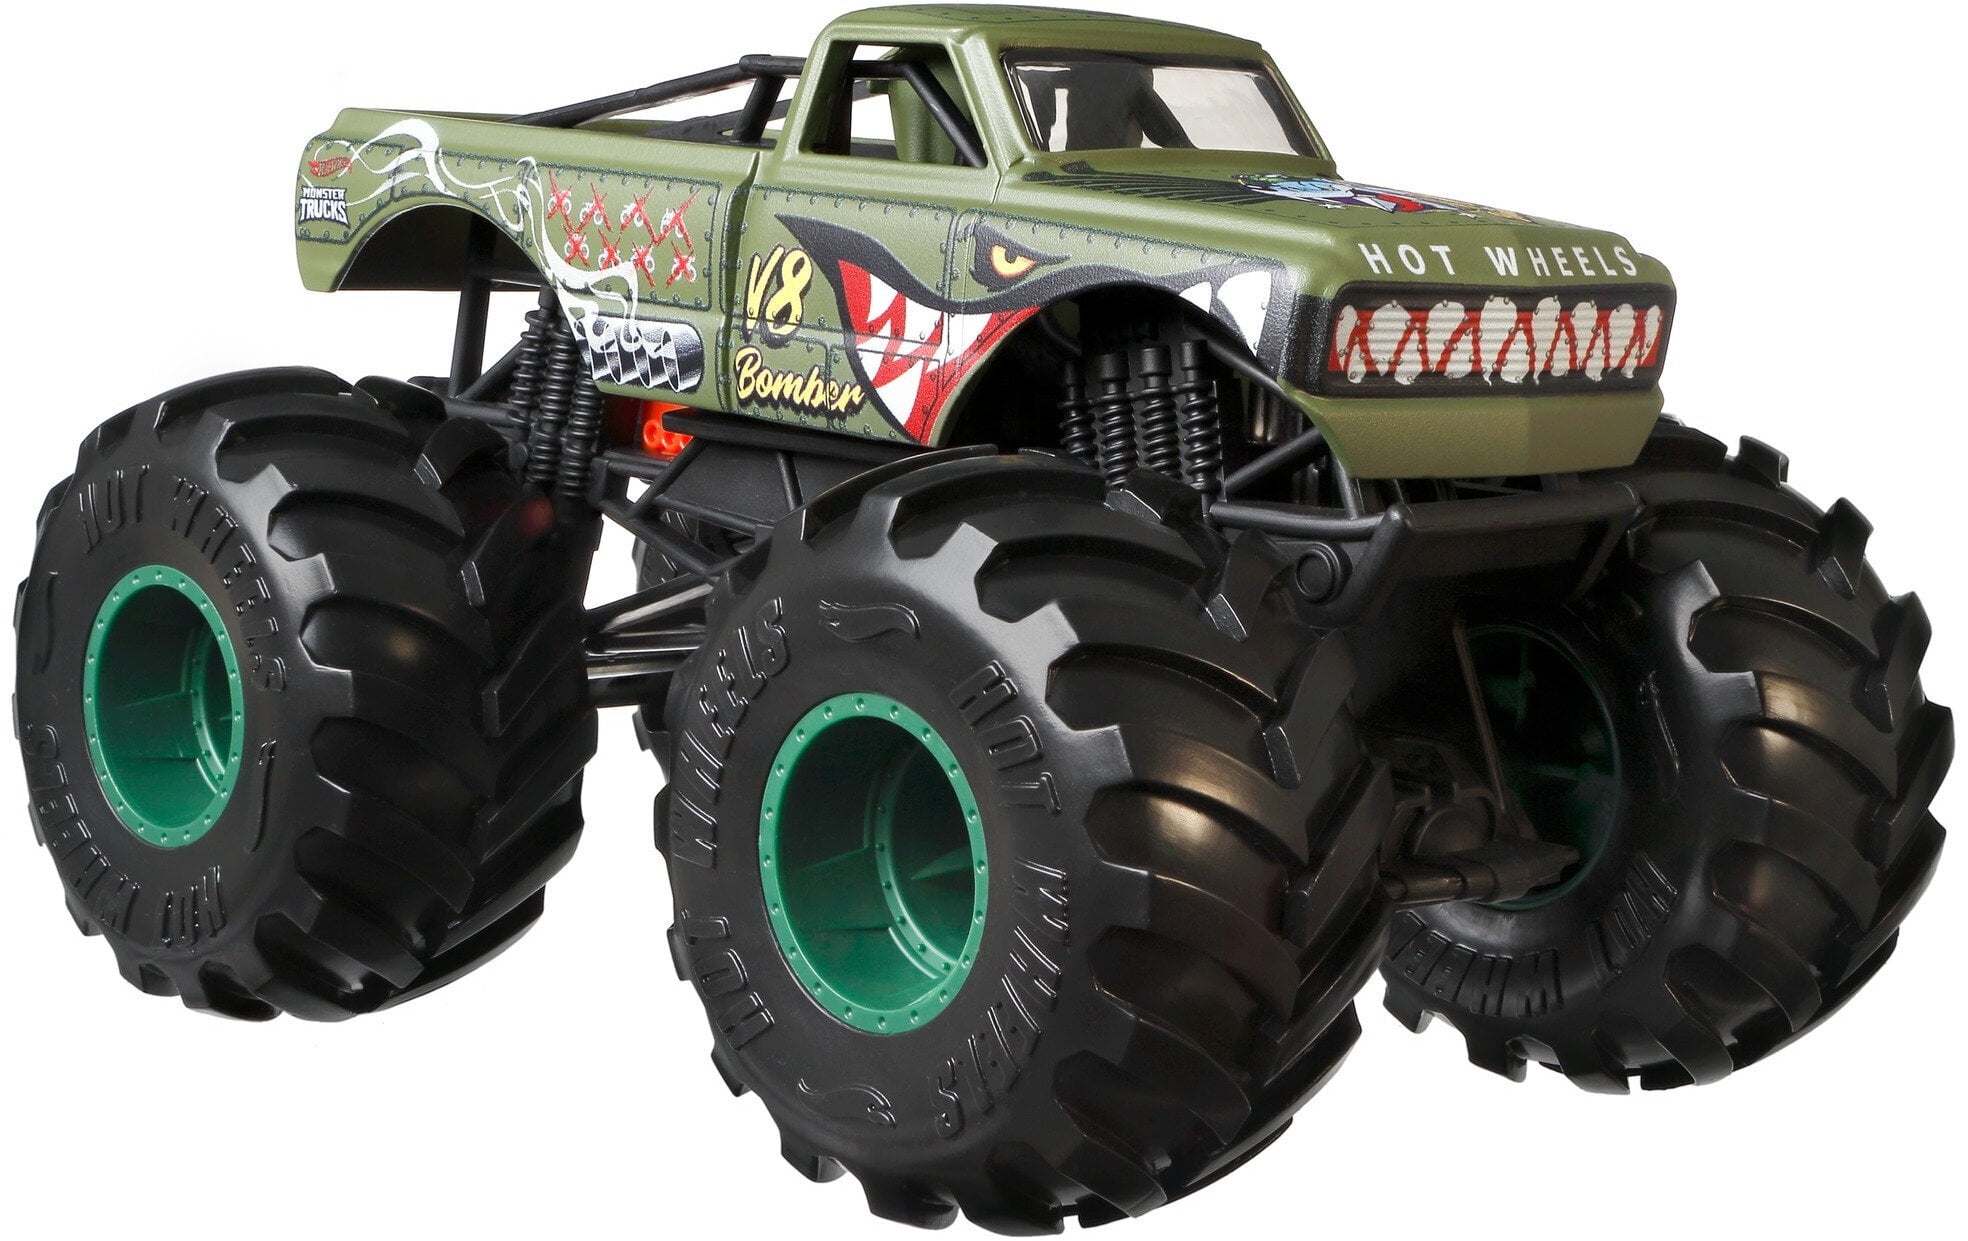 2018 hot wheels monster truck 5” bone shaker green